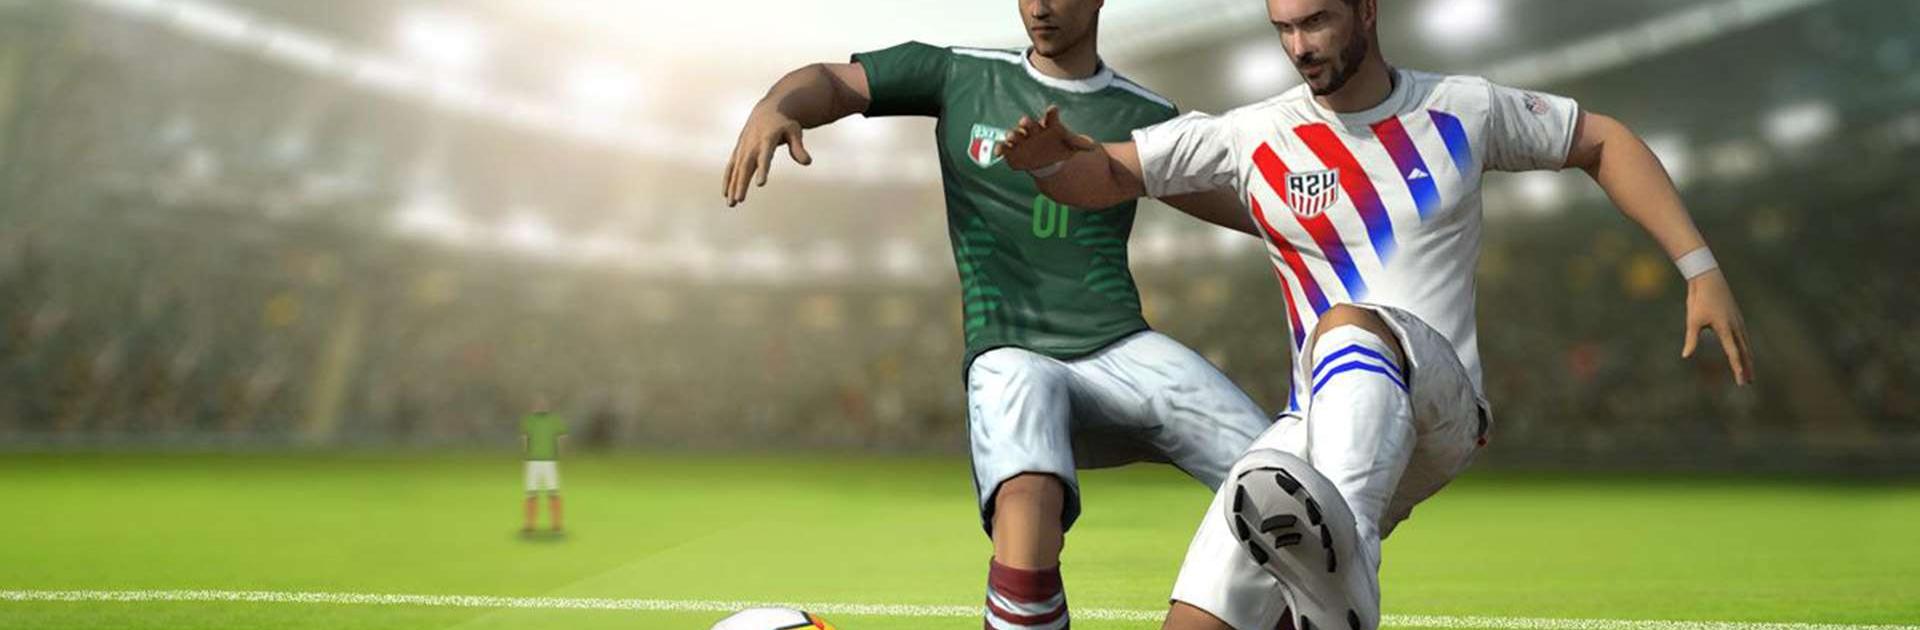 Downloaden and Spielen von Soccer Cup 2021 Football Games auf PC and Mac (Emulator)